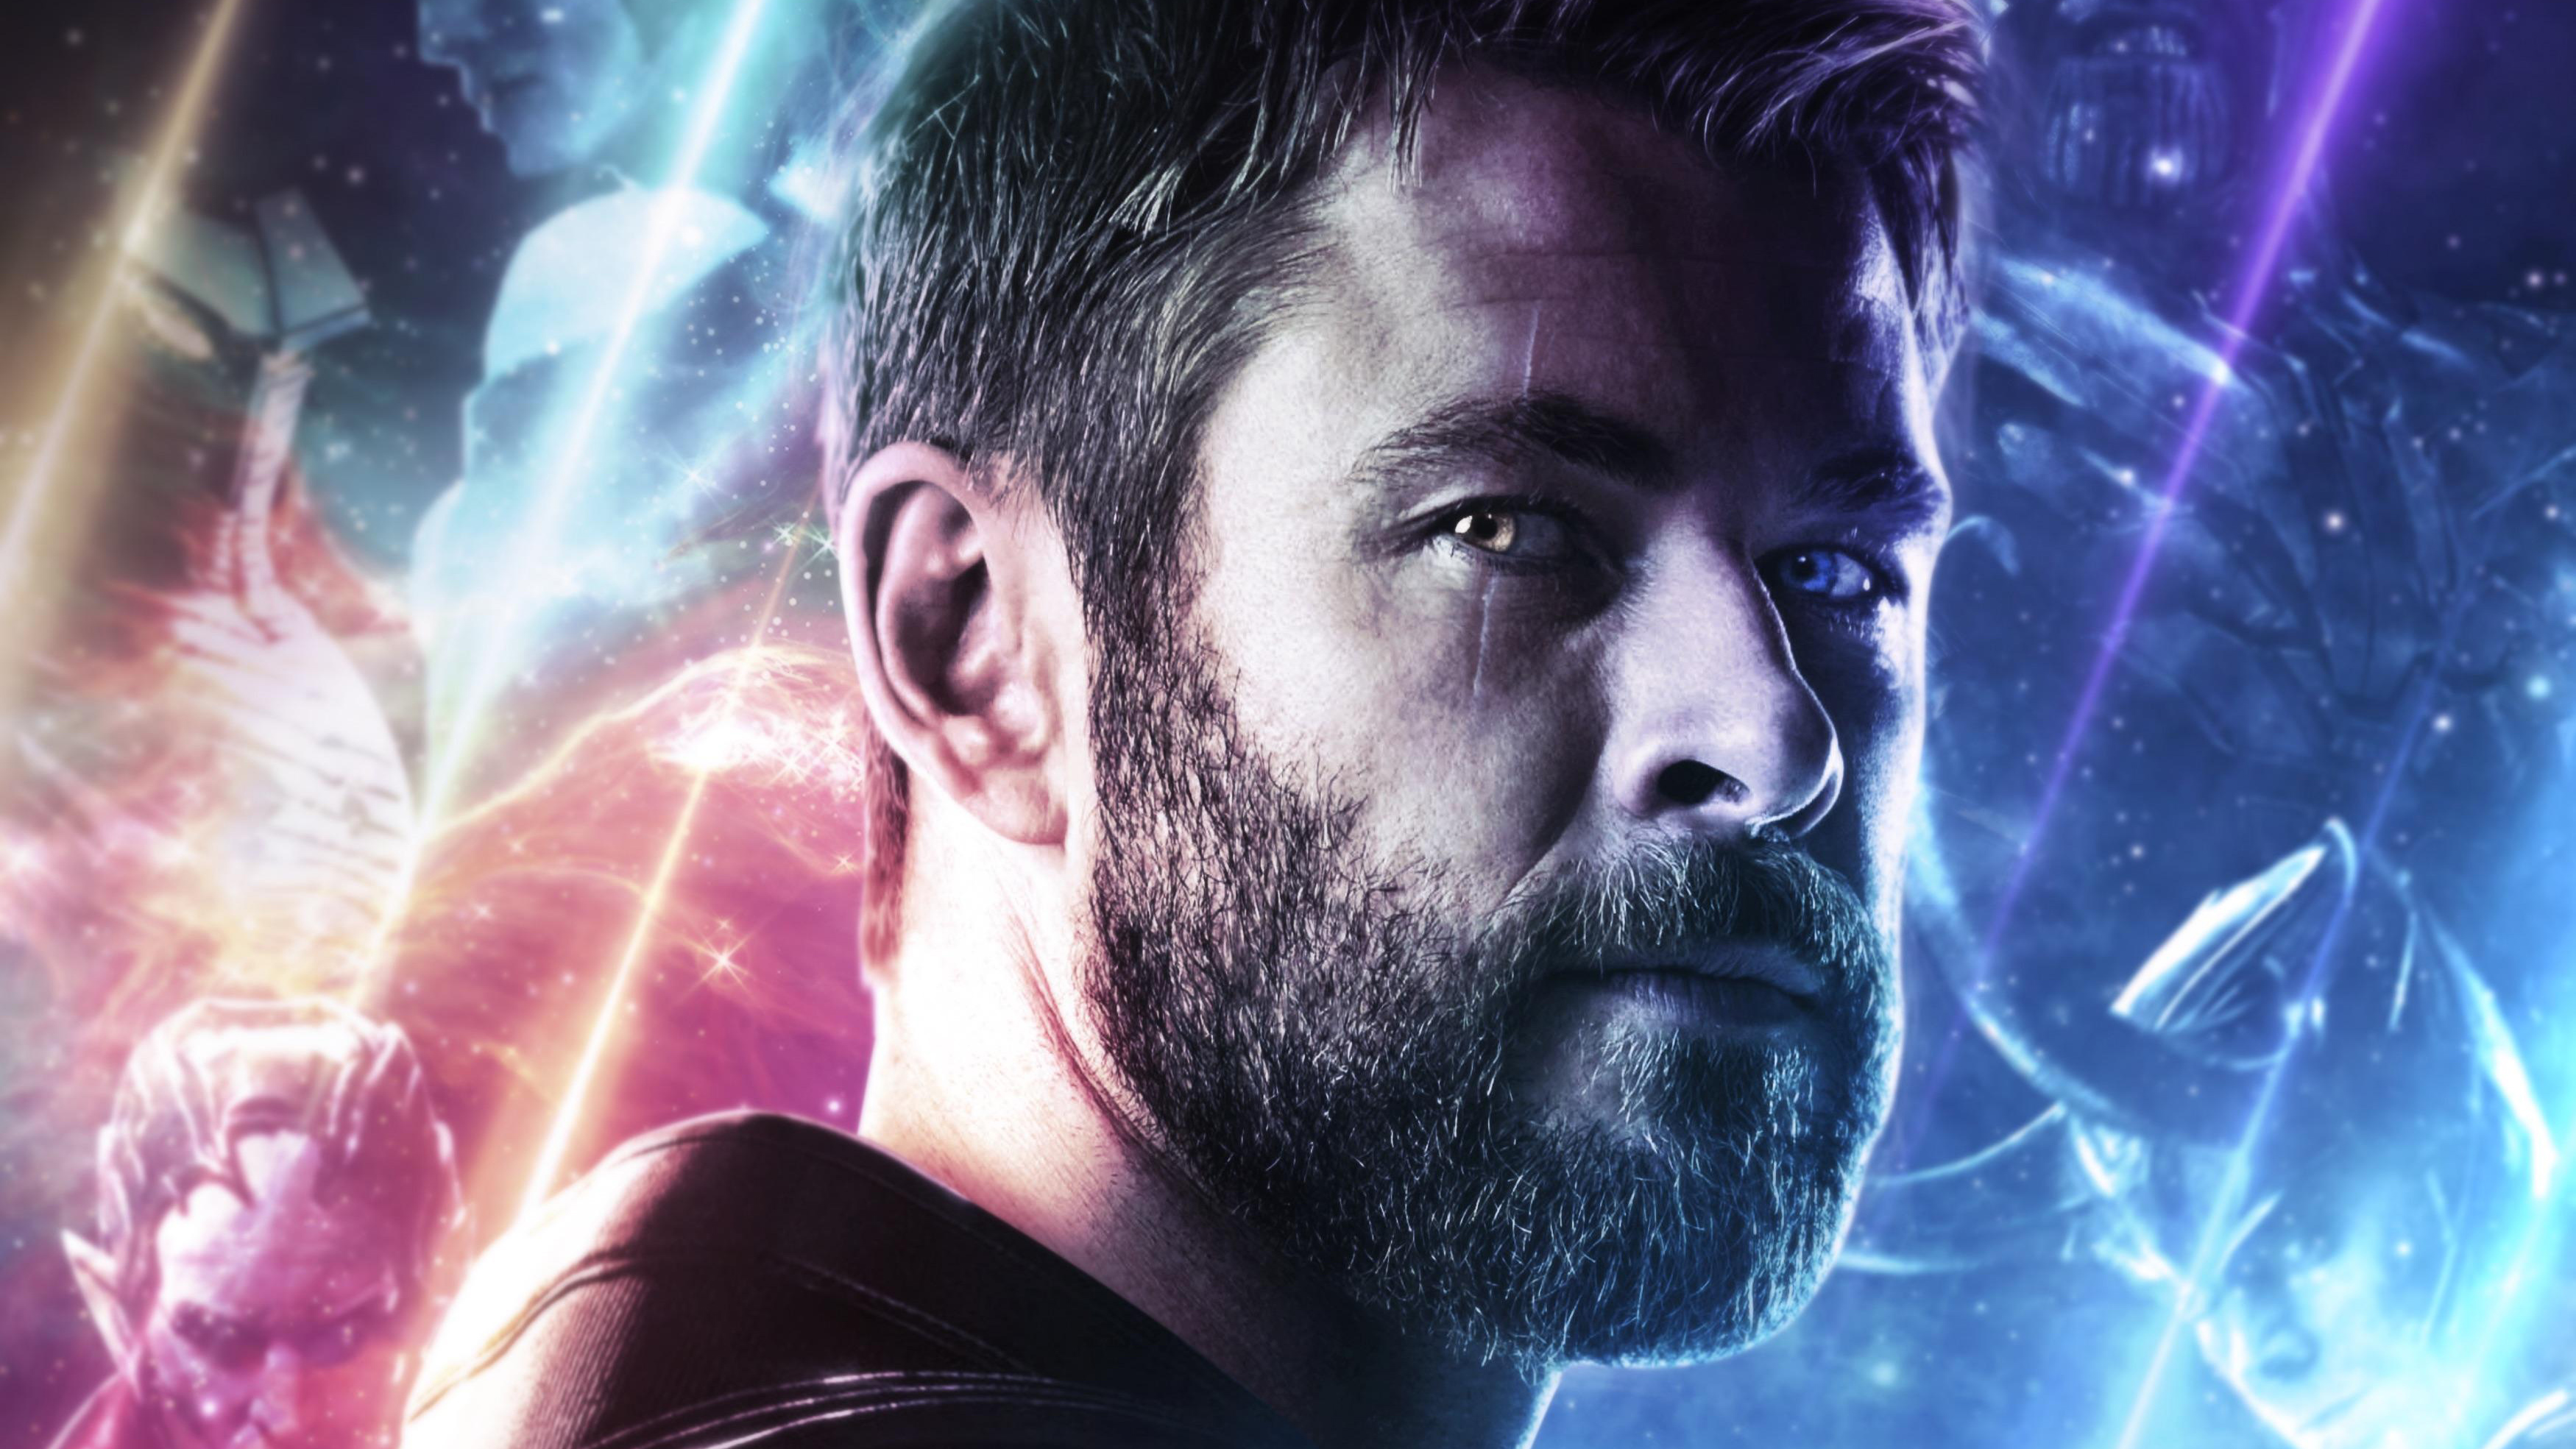 Thor Avengers Endgame 4k New, HD Superheroes, 4k Wallpaper, Image